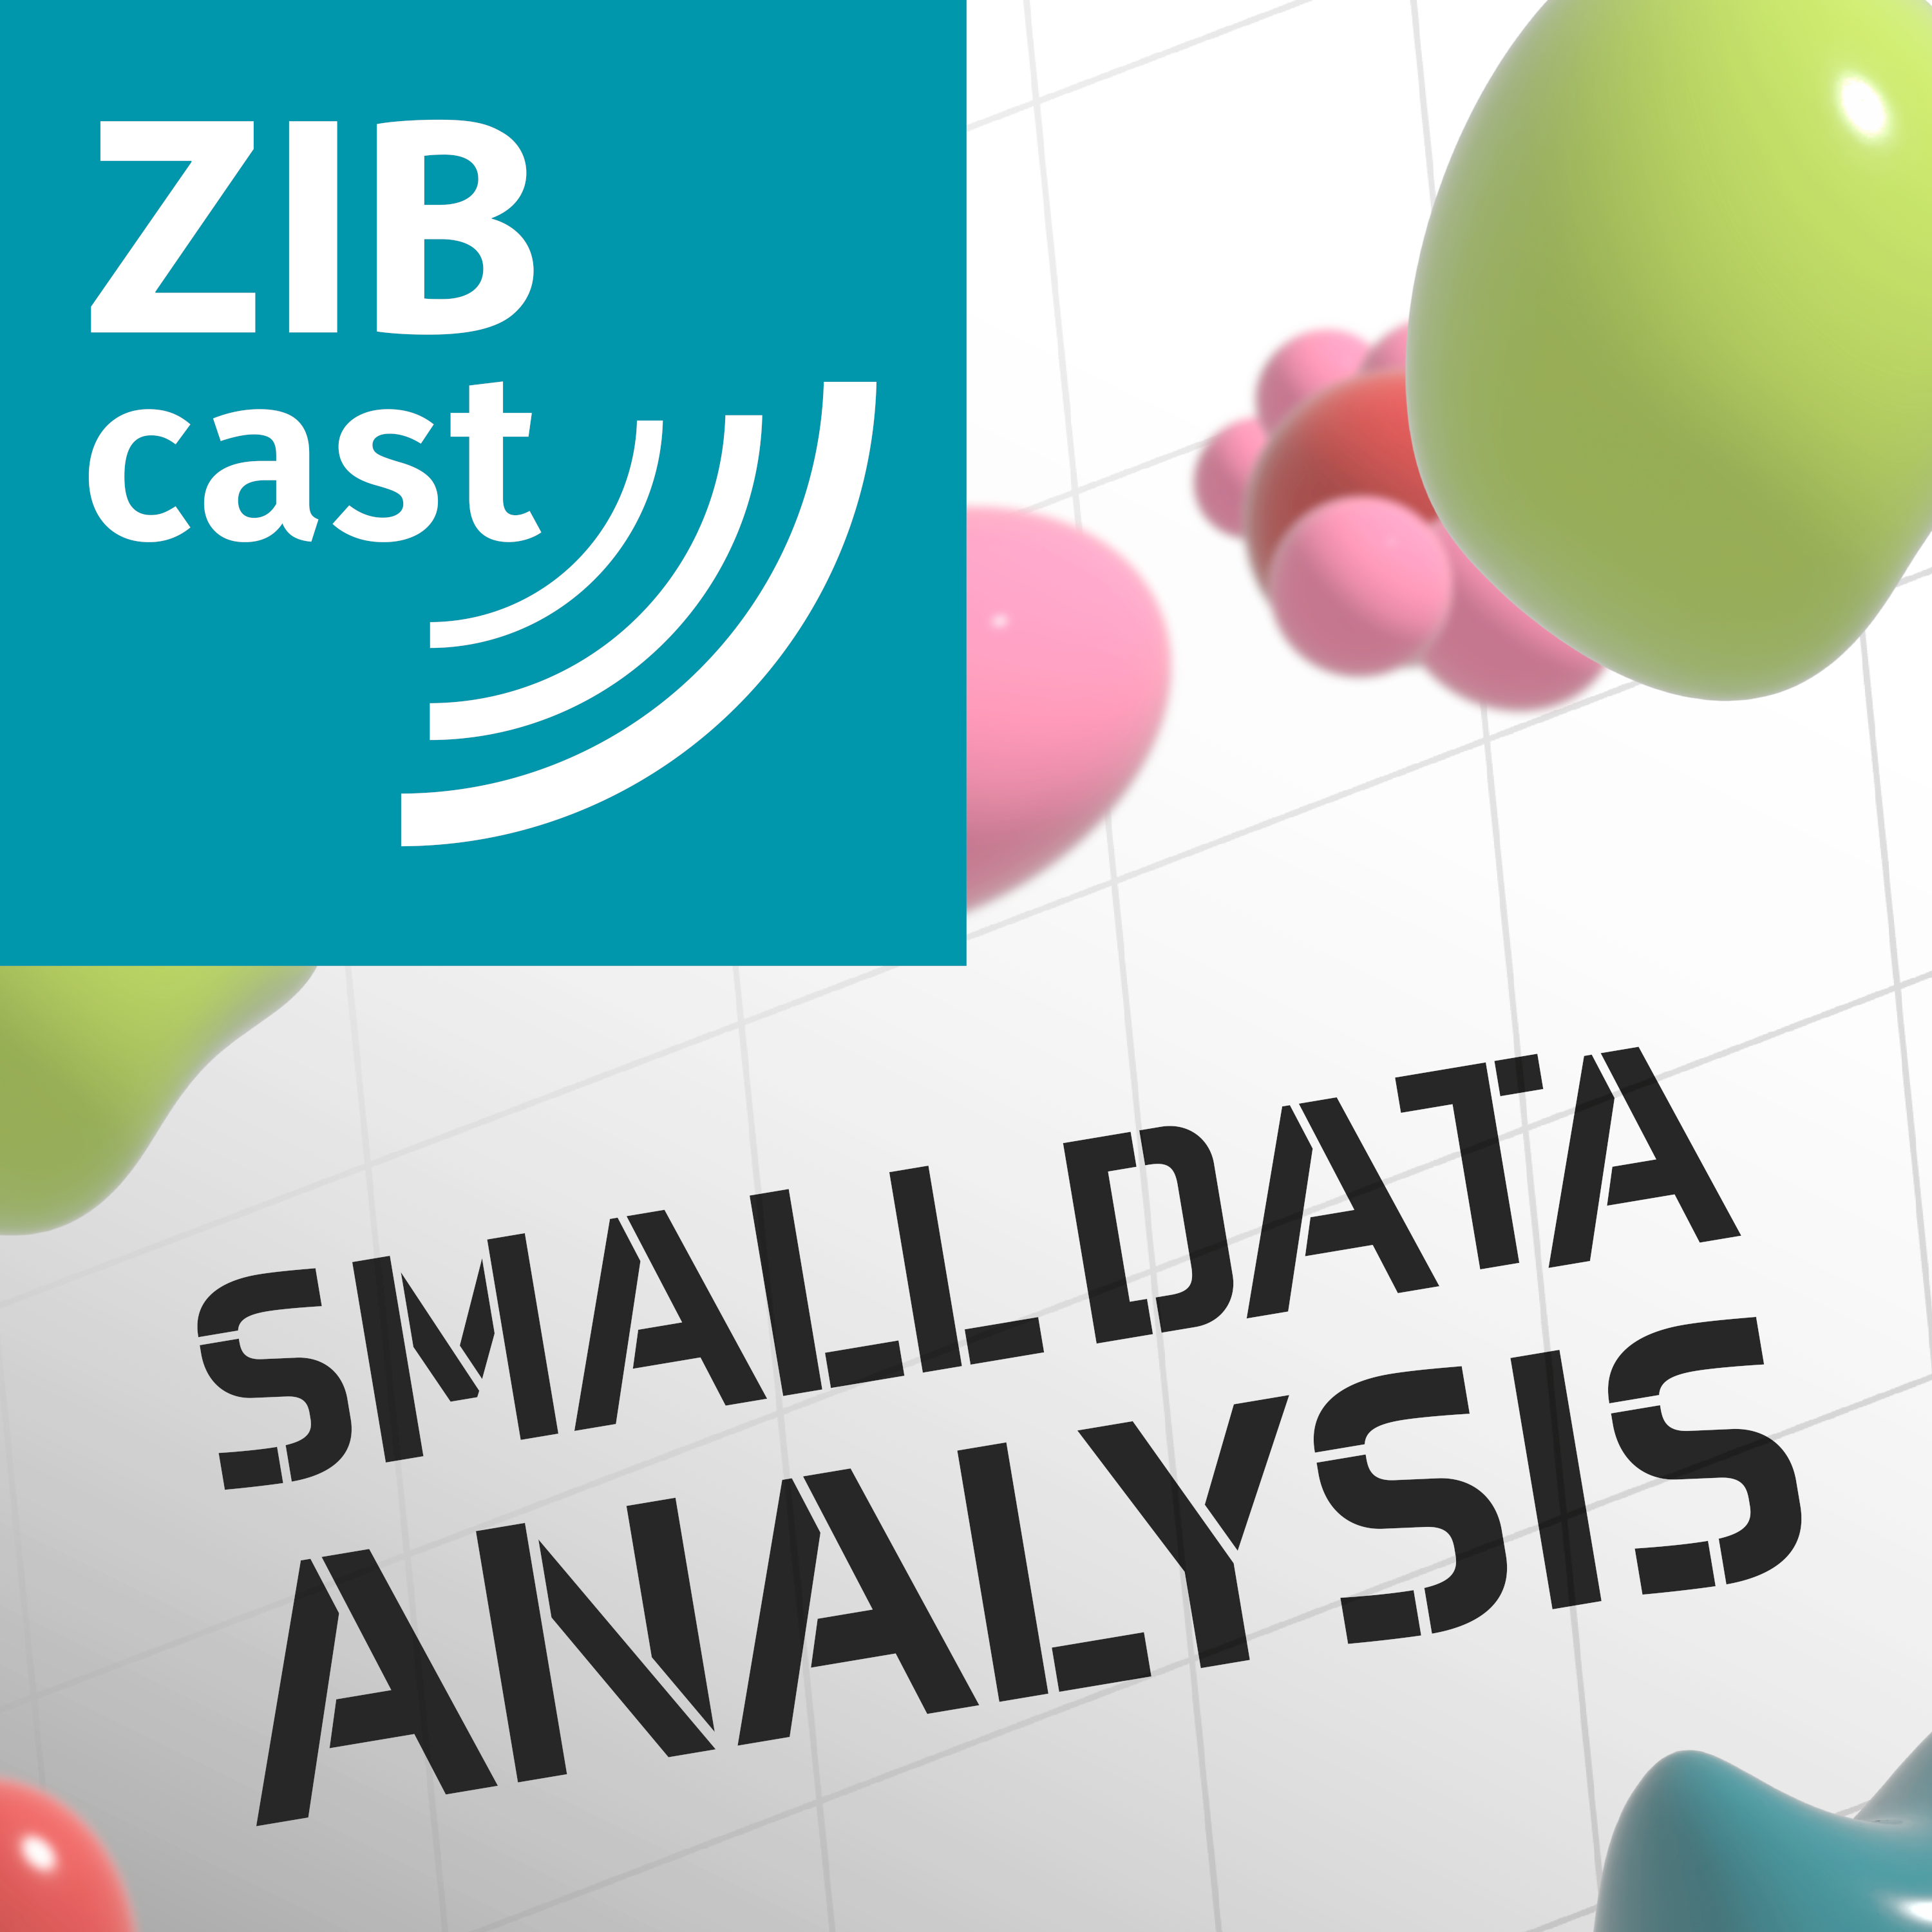 ZIBcast: Small Data Analysis - Kleine Datensätze